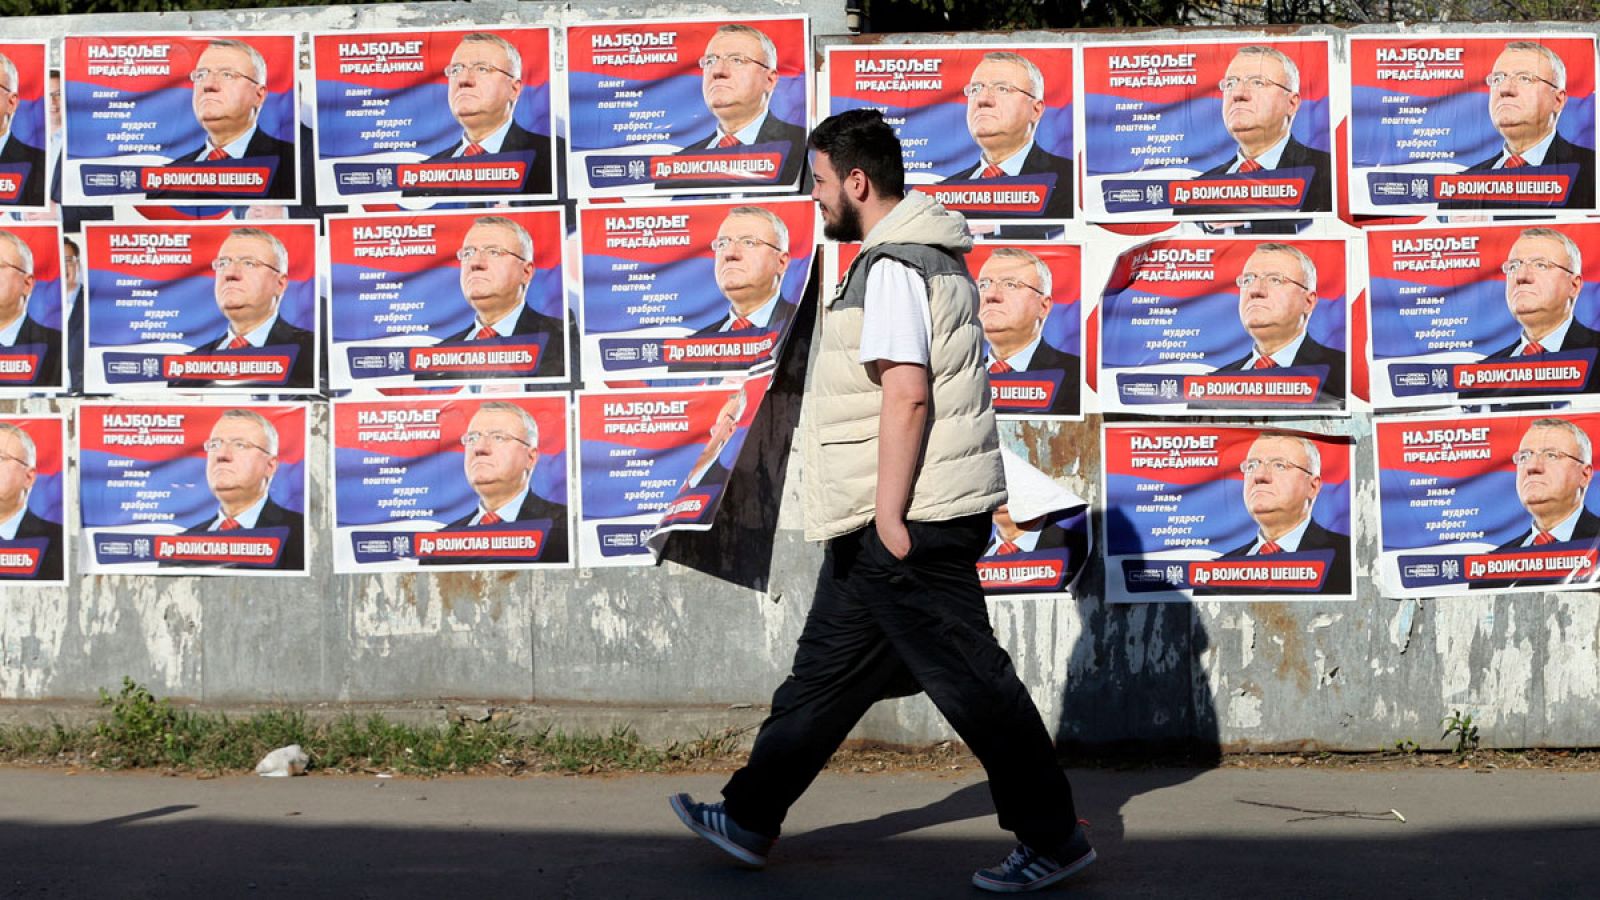 Un hombre pasa junto a varios carteles electorales en Belgrado, Serbia